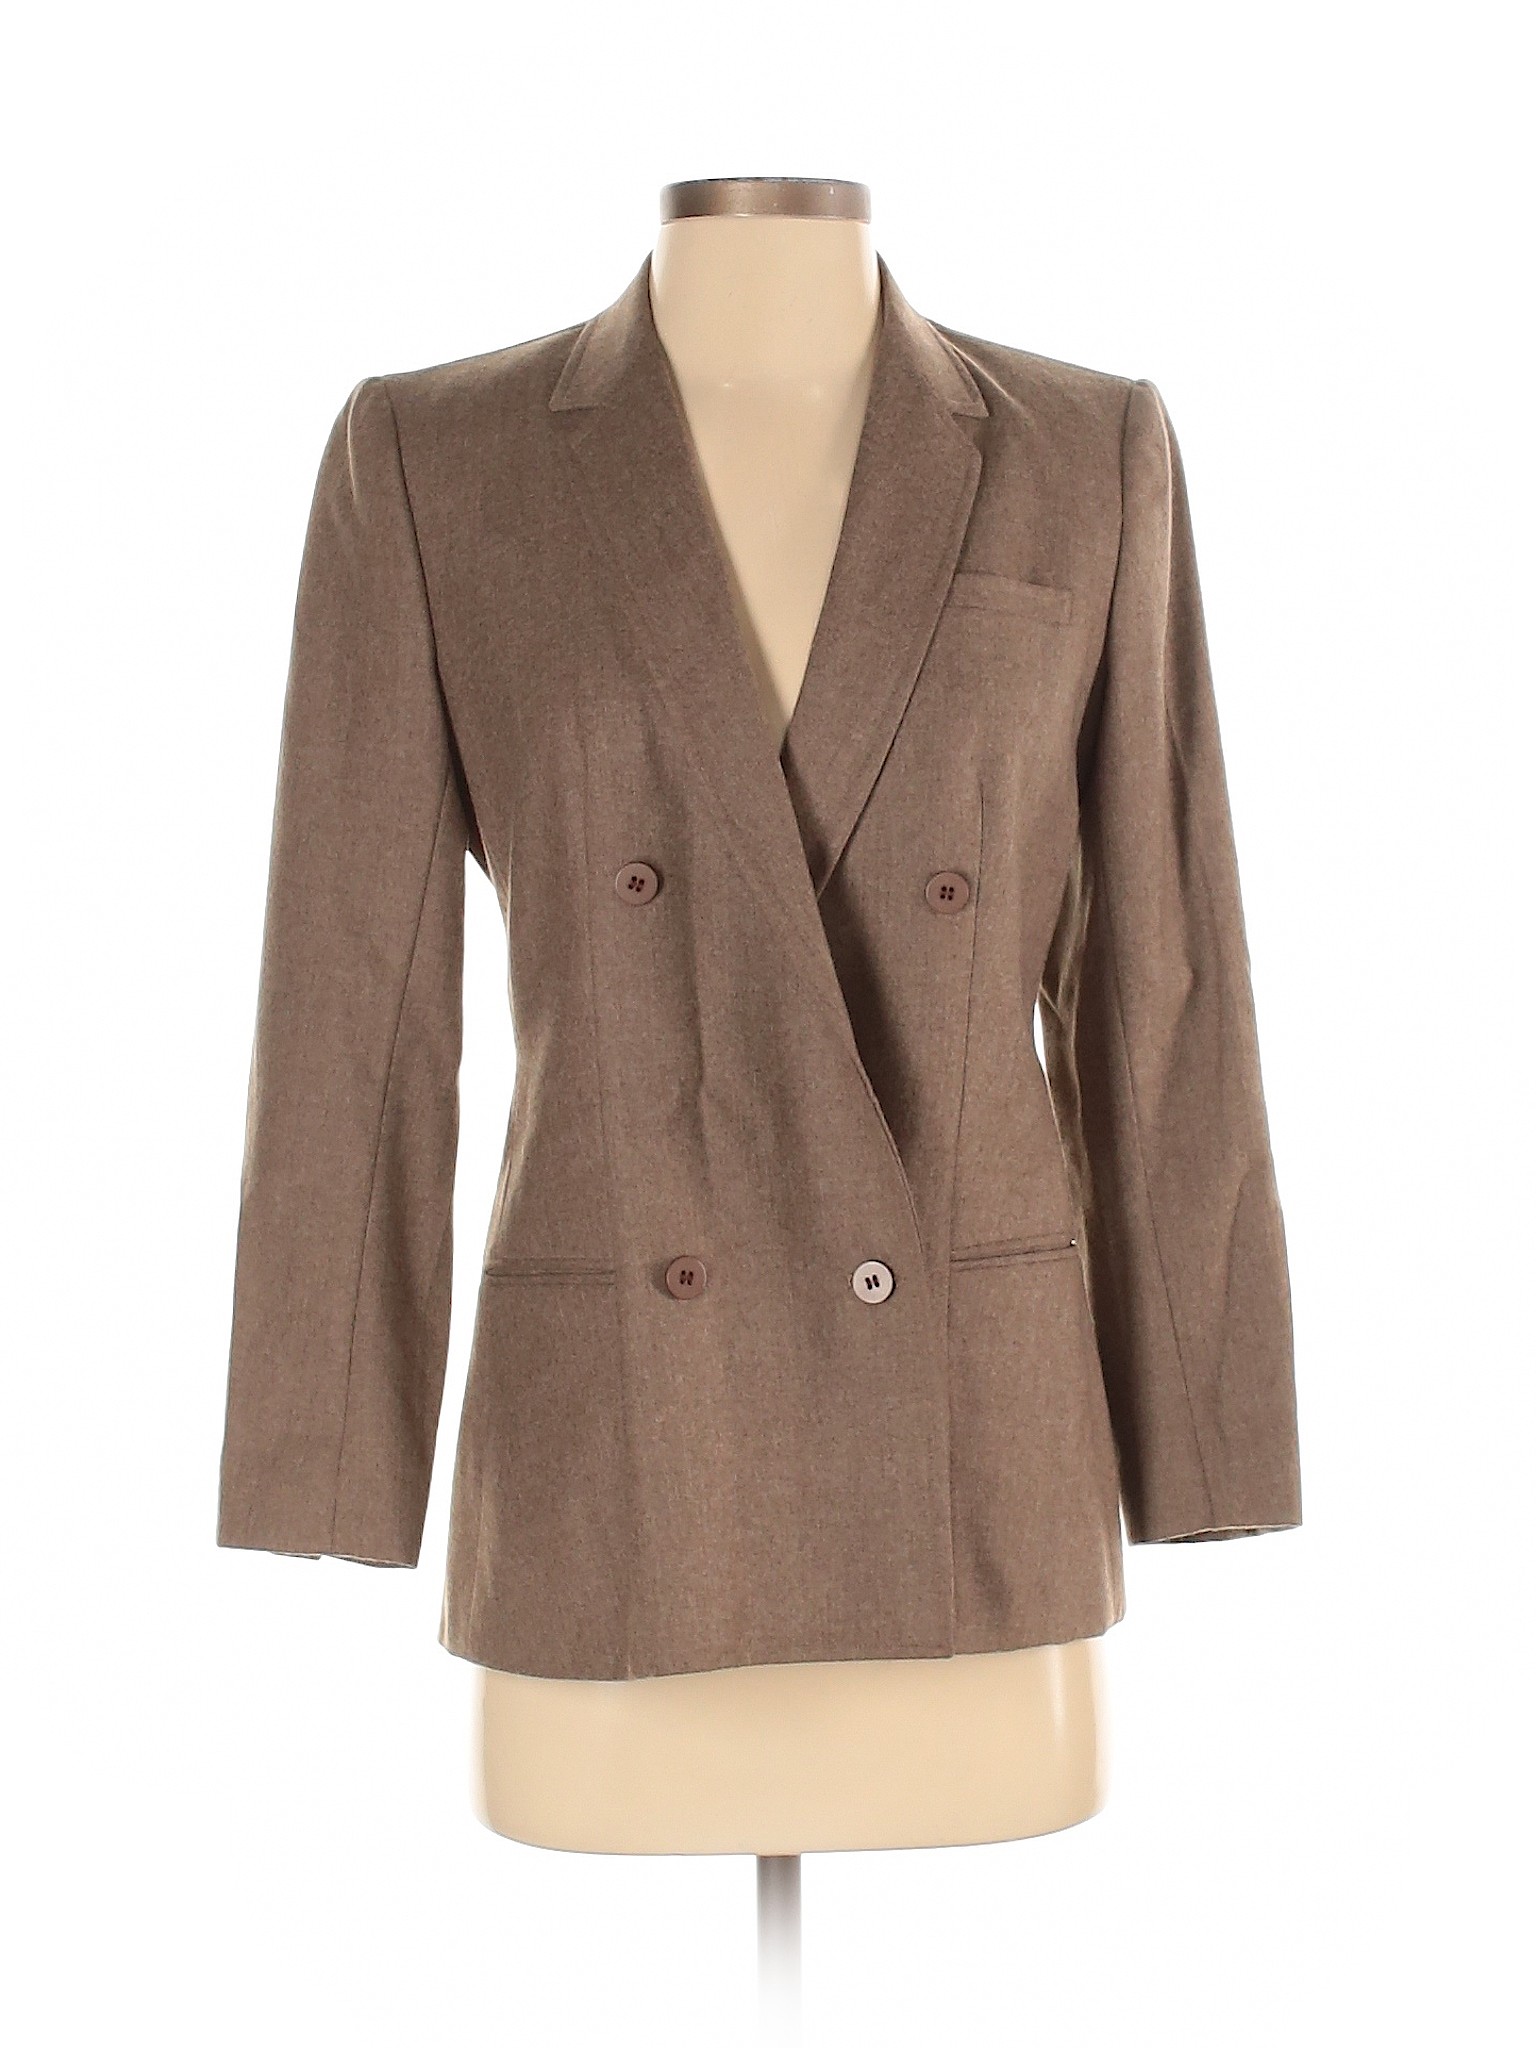 Harve Benard Women Brown Wool Blazer 4 | eBay